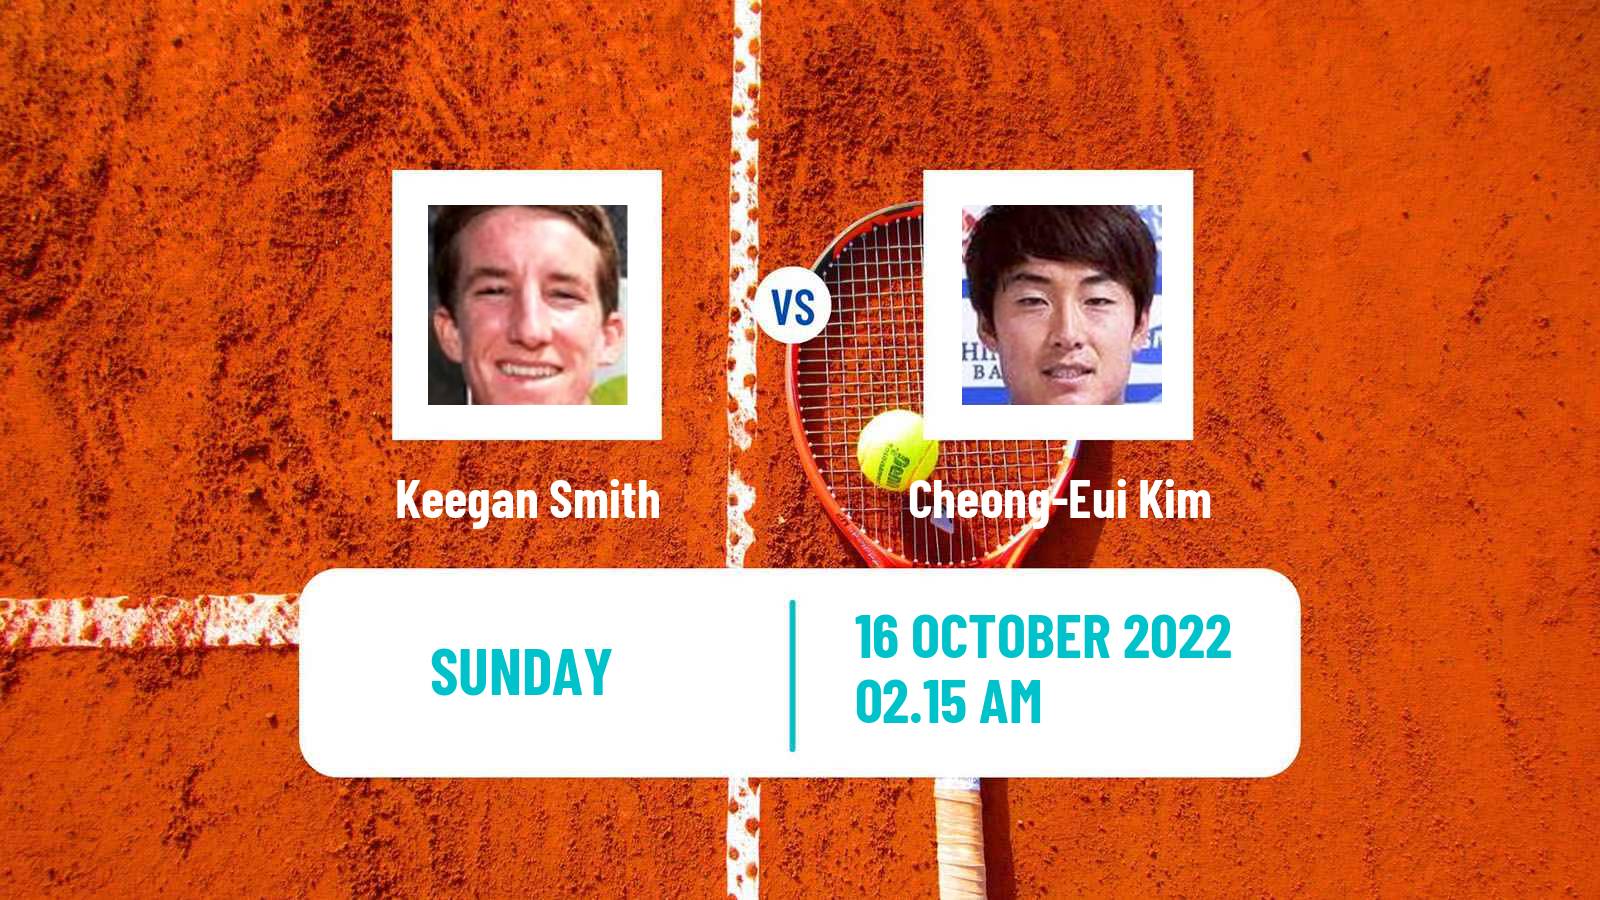 Tennis ATP Challenger Keegan Smith - Cheong-Eui Kim